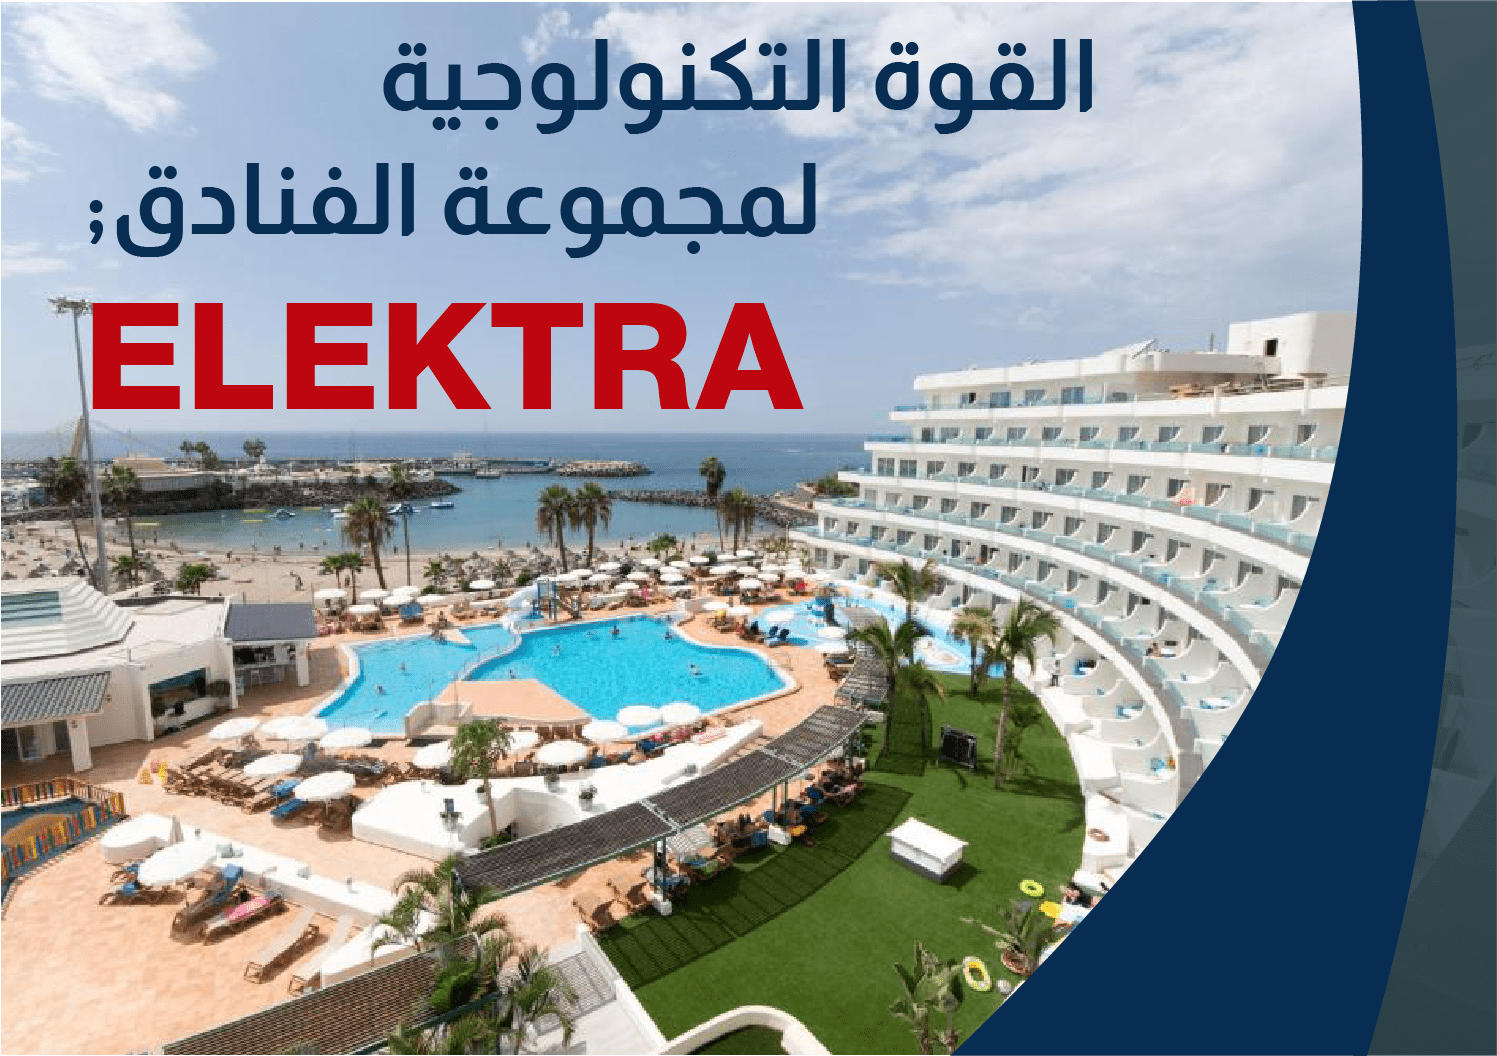 ELEKTRA – القوة التكنولوجية لمجموعة الفنادق